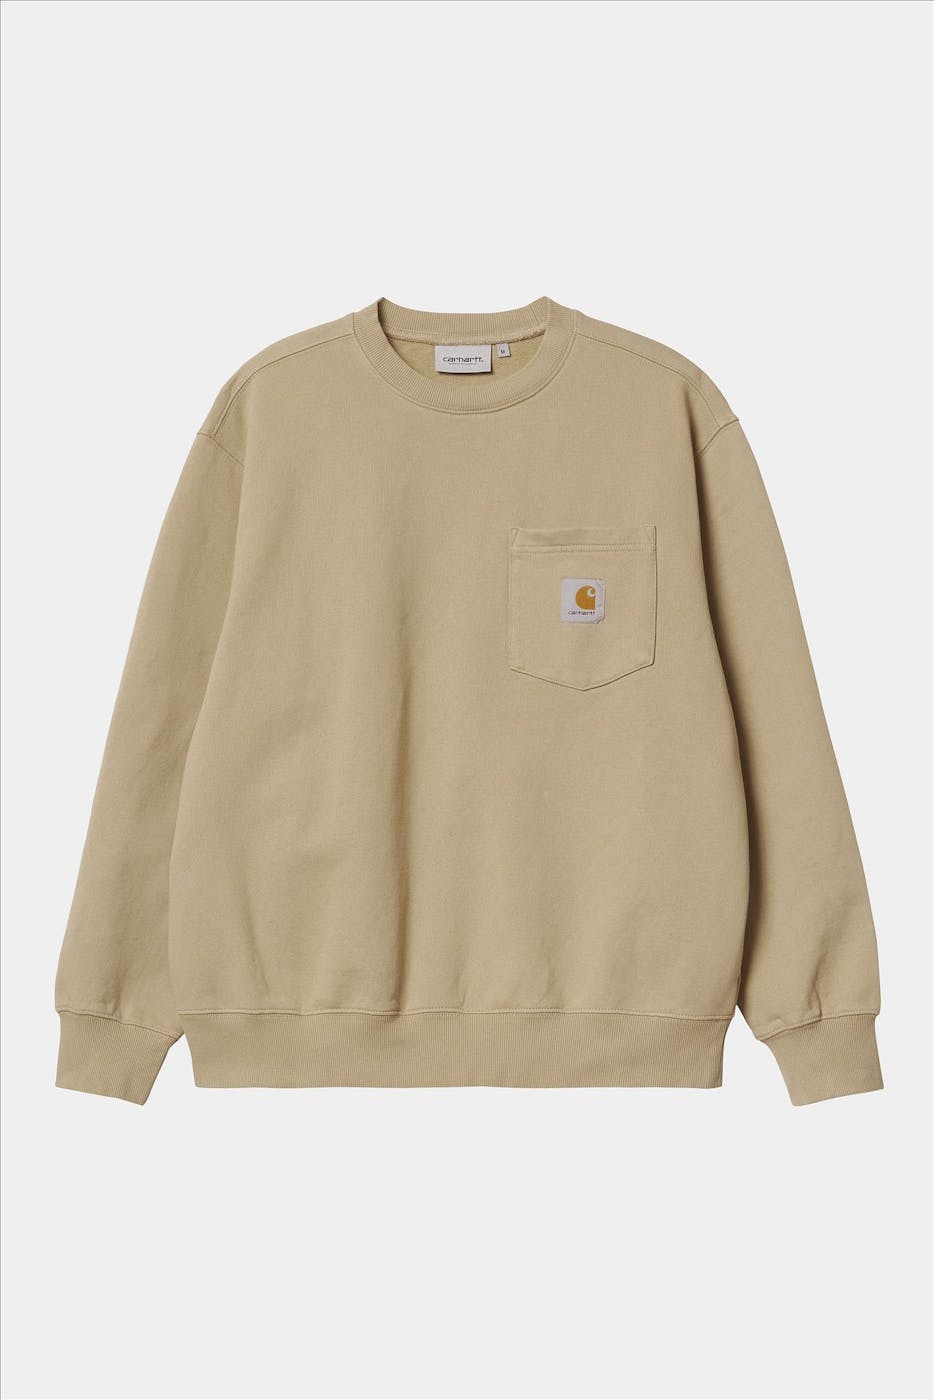 Carhartt WIP - Beige Pocket sweater